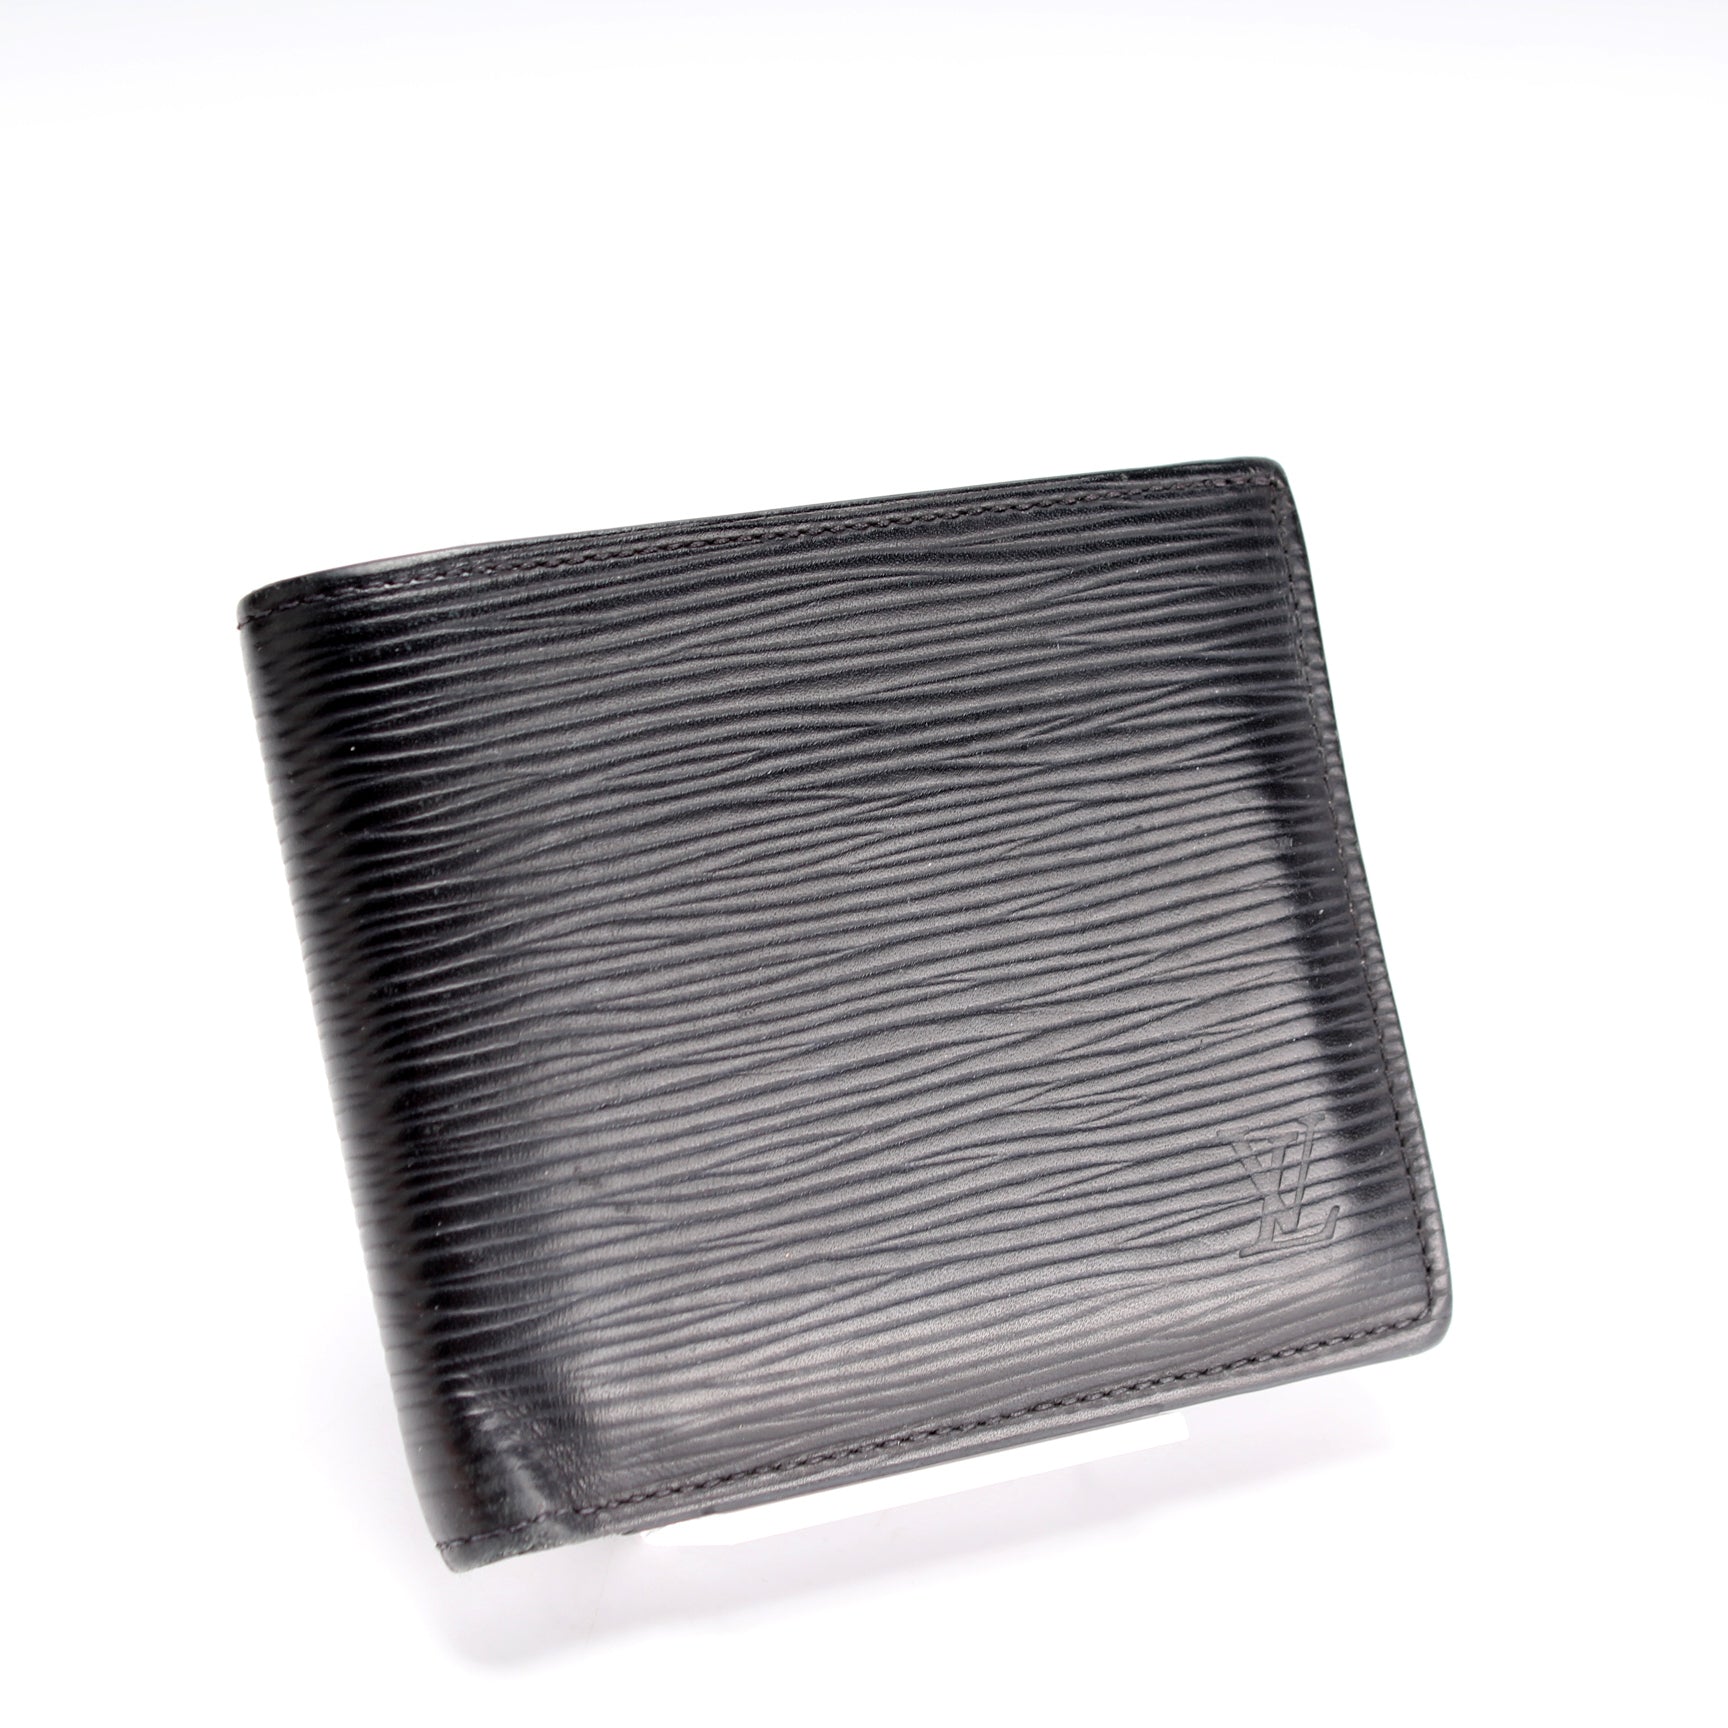 epi leather wallet